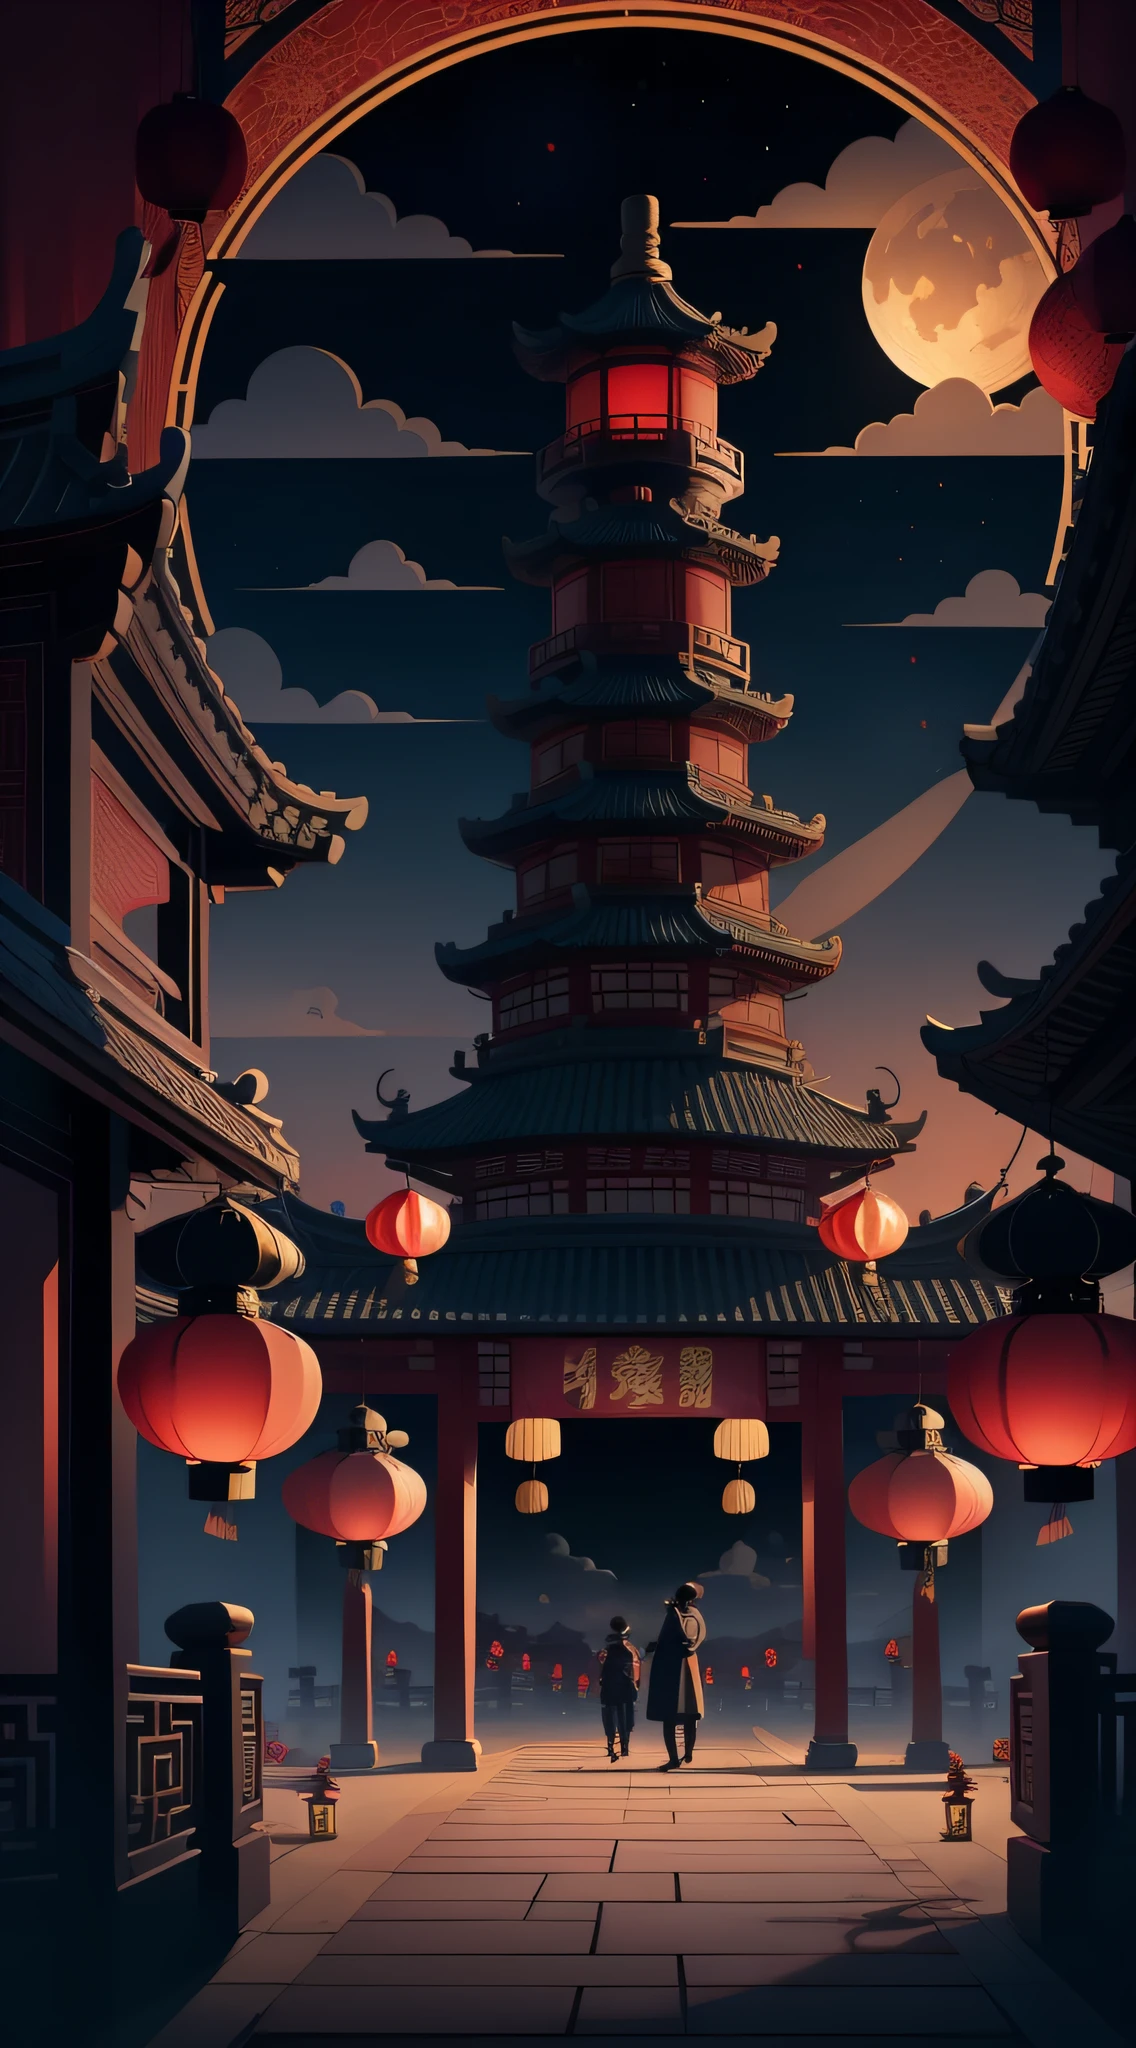 中秋节，月饼， 祥云, 红灯笼, 精美的中国古建筑, 背景是一轮巨大的月亮, 带有矢量线插图, 黄色的、红色和深蓝色色调, 抽象图片, 无人，无人，无人，超现实主义, 清晰的背景趋势, 清晰的轮廓光, 边缘光, 幻想, 斑驳的光, 平面插图,迪士尼风格, 8千, --与 9:16 --q 2 --二二 5